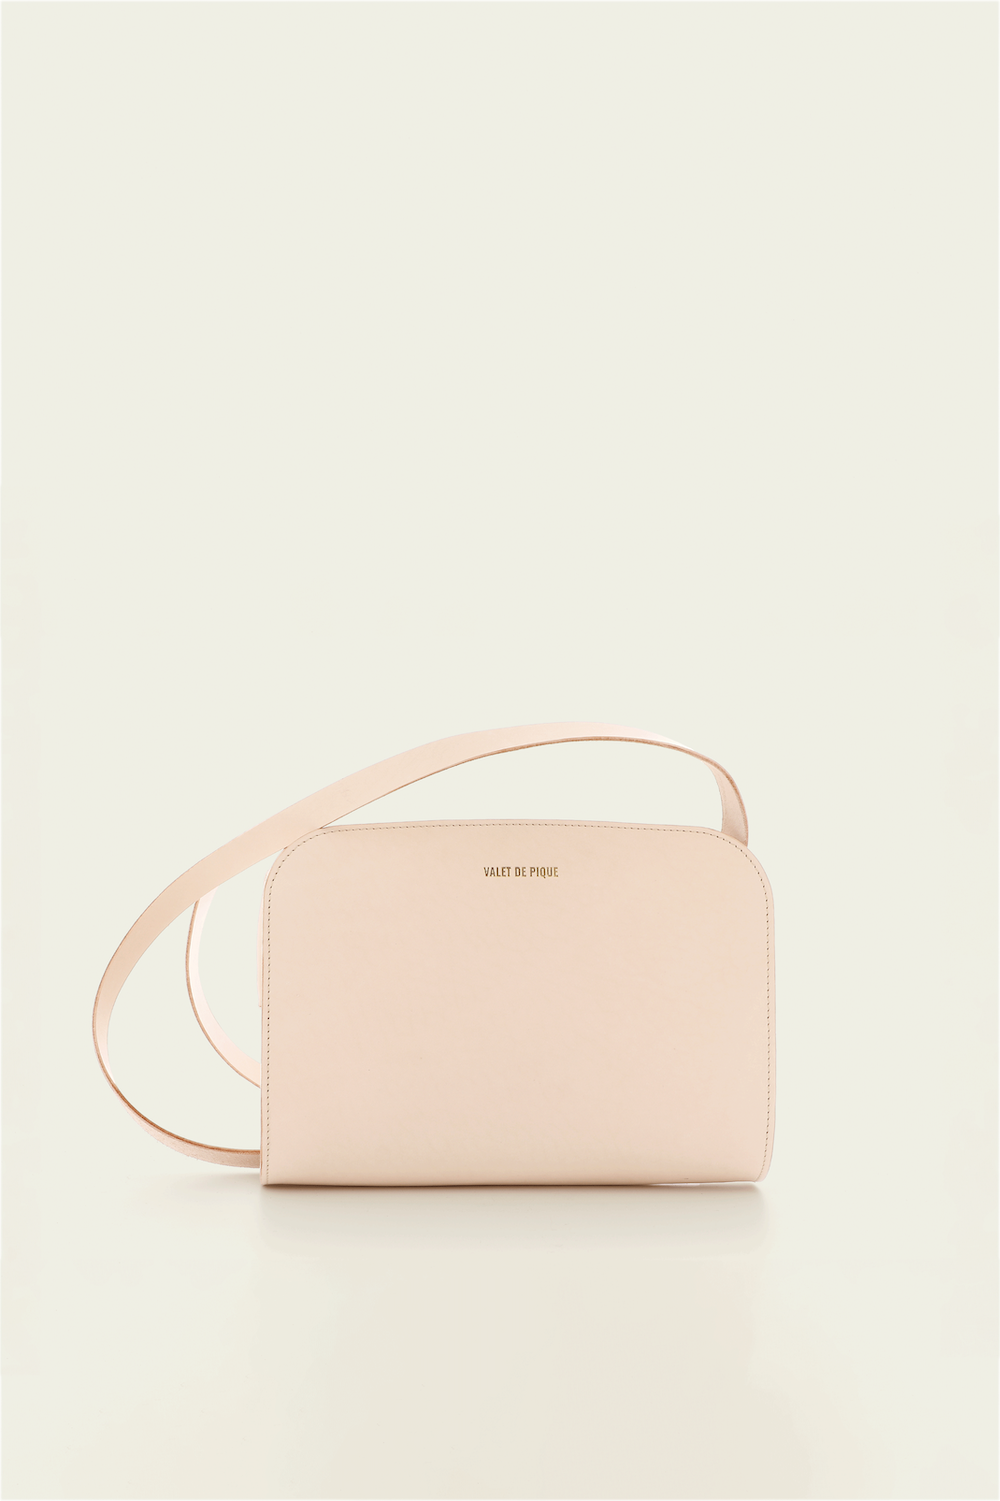 The Madeleine handbag - Épure